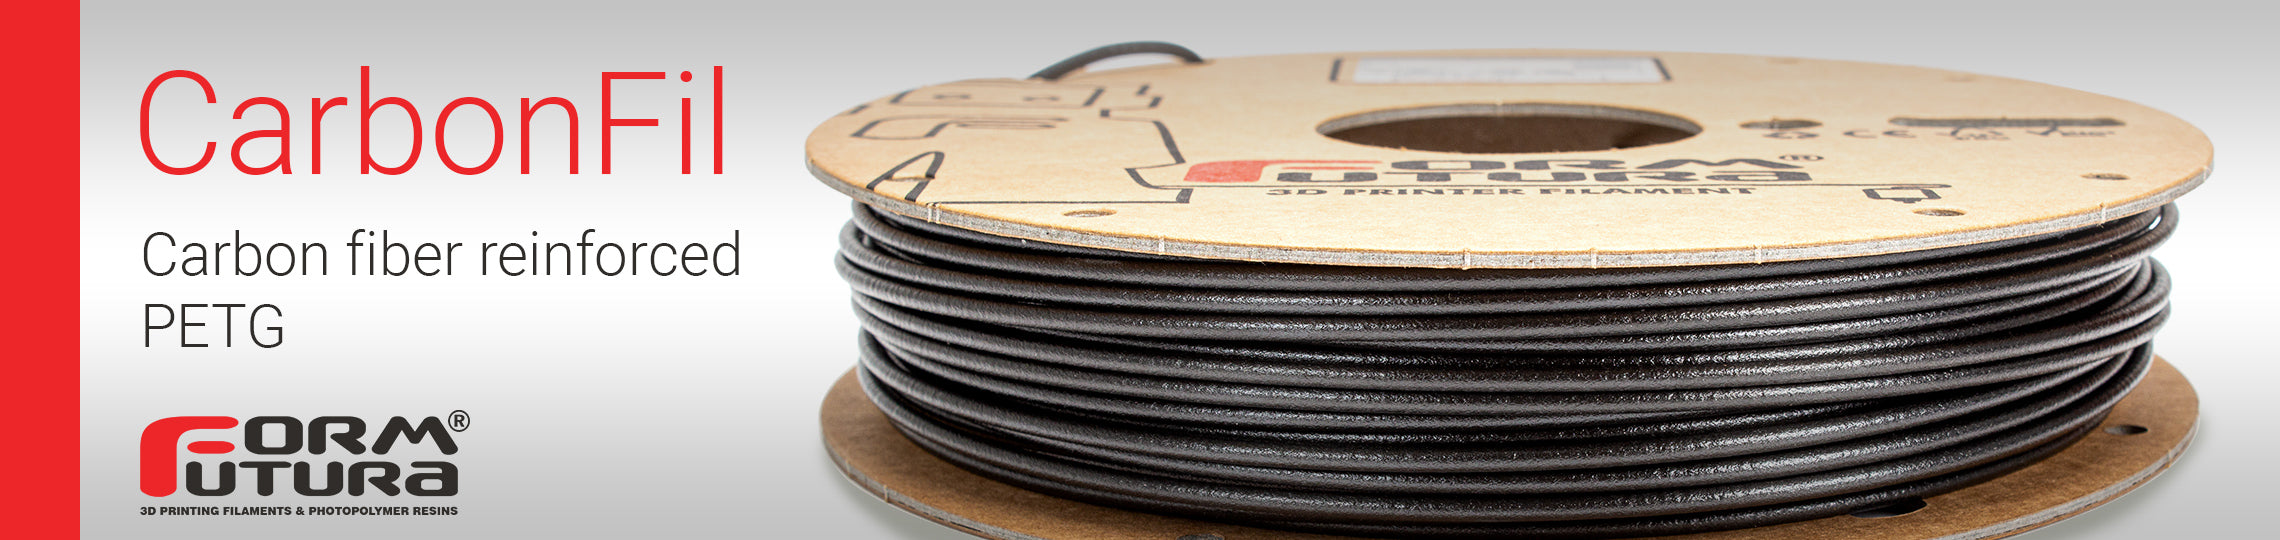 Carbon Fibre PETG Filament CarbonFil 1.75mm Black 2300 gram 3D Printer Filament